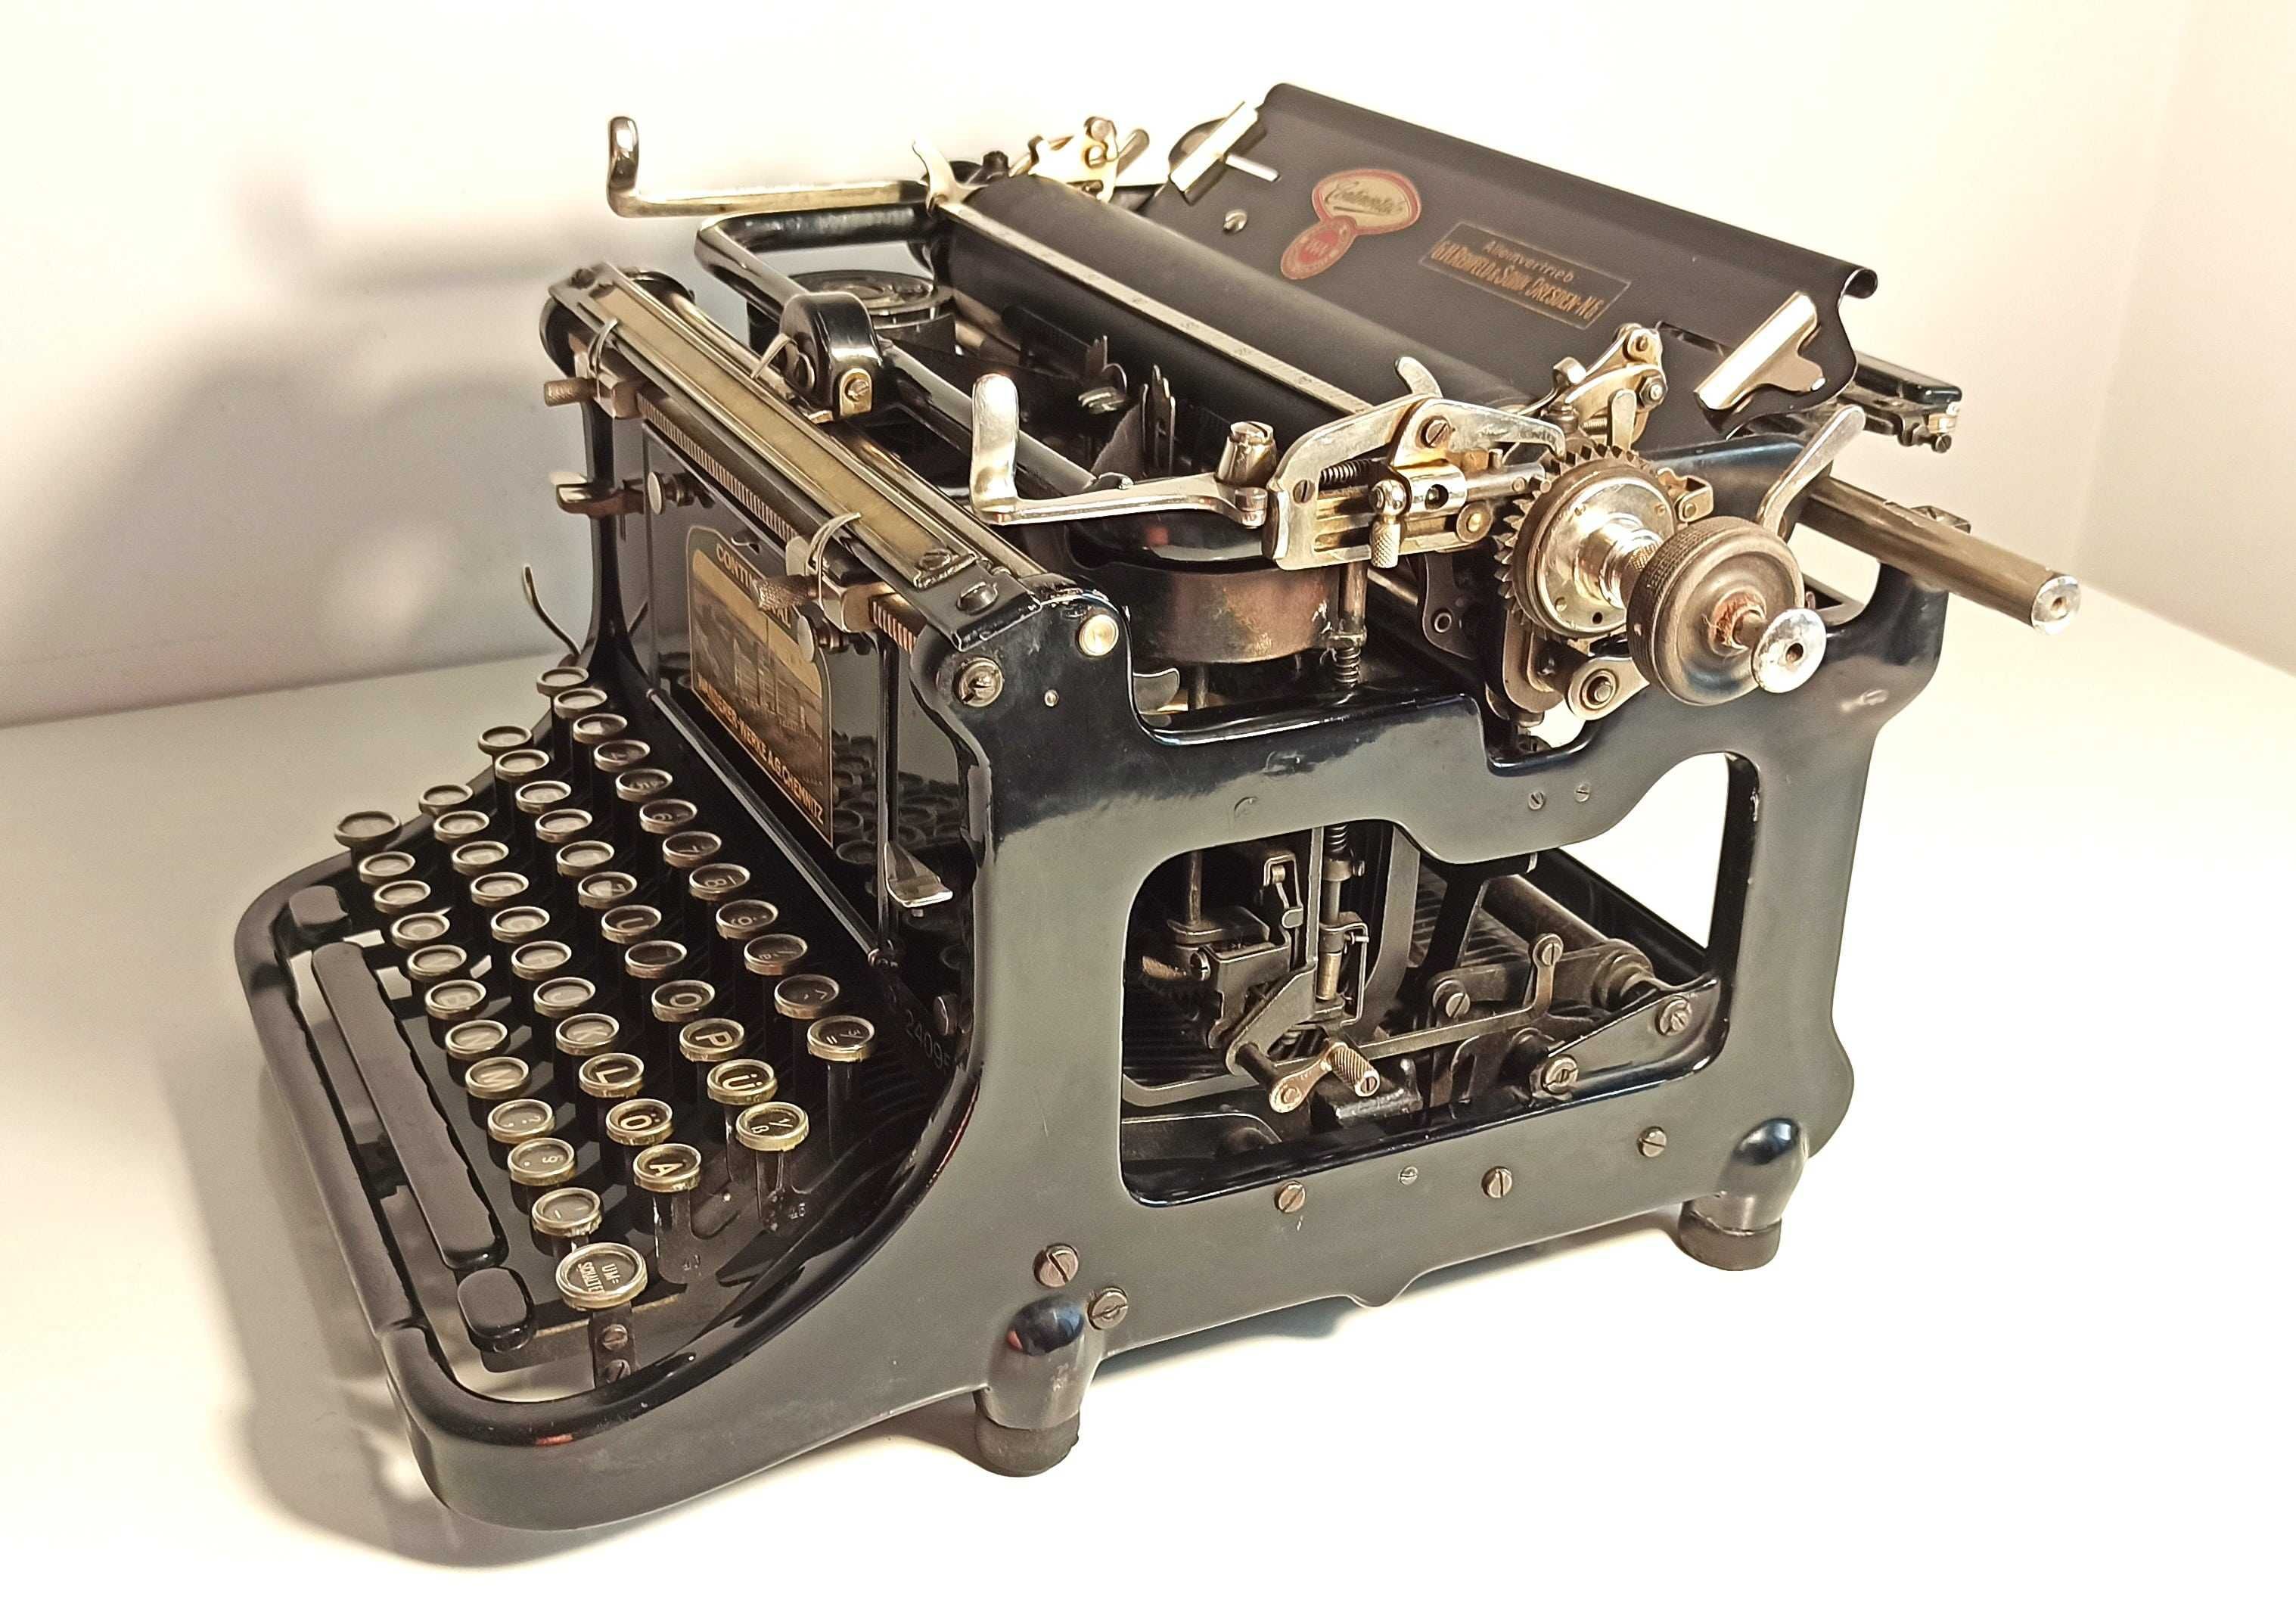 Mașina de scris Continental, model unic, ca nouă! REDUCERE!